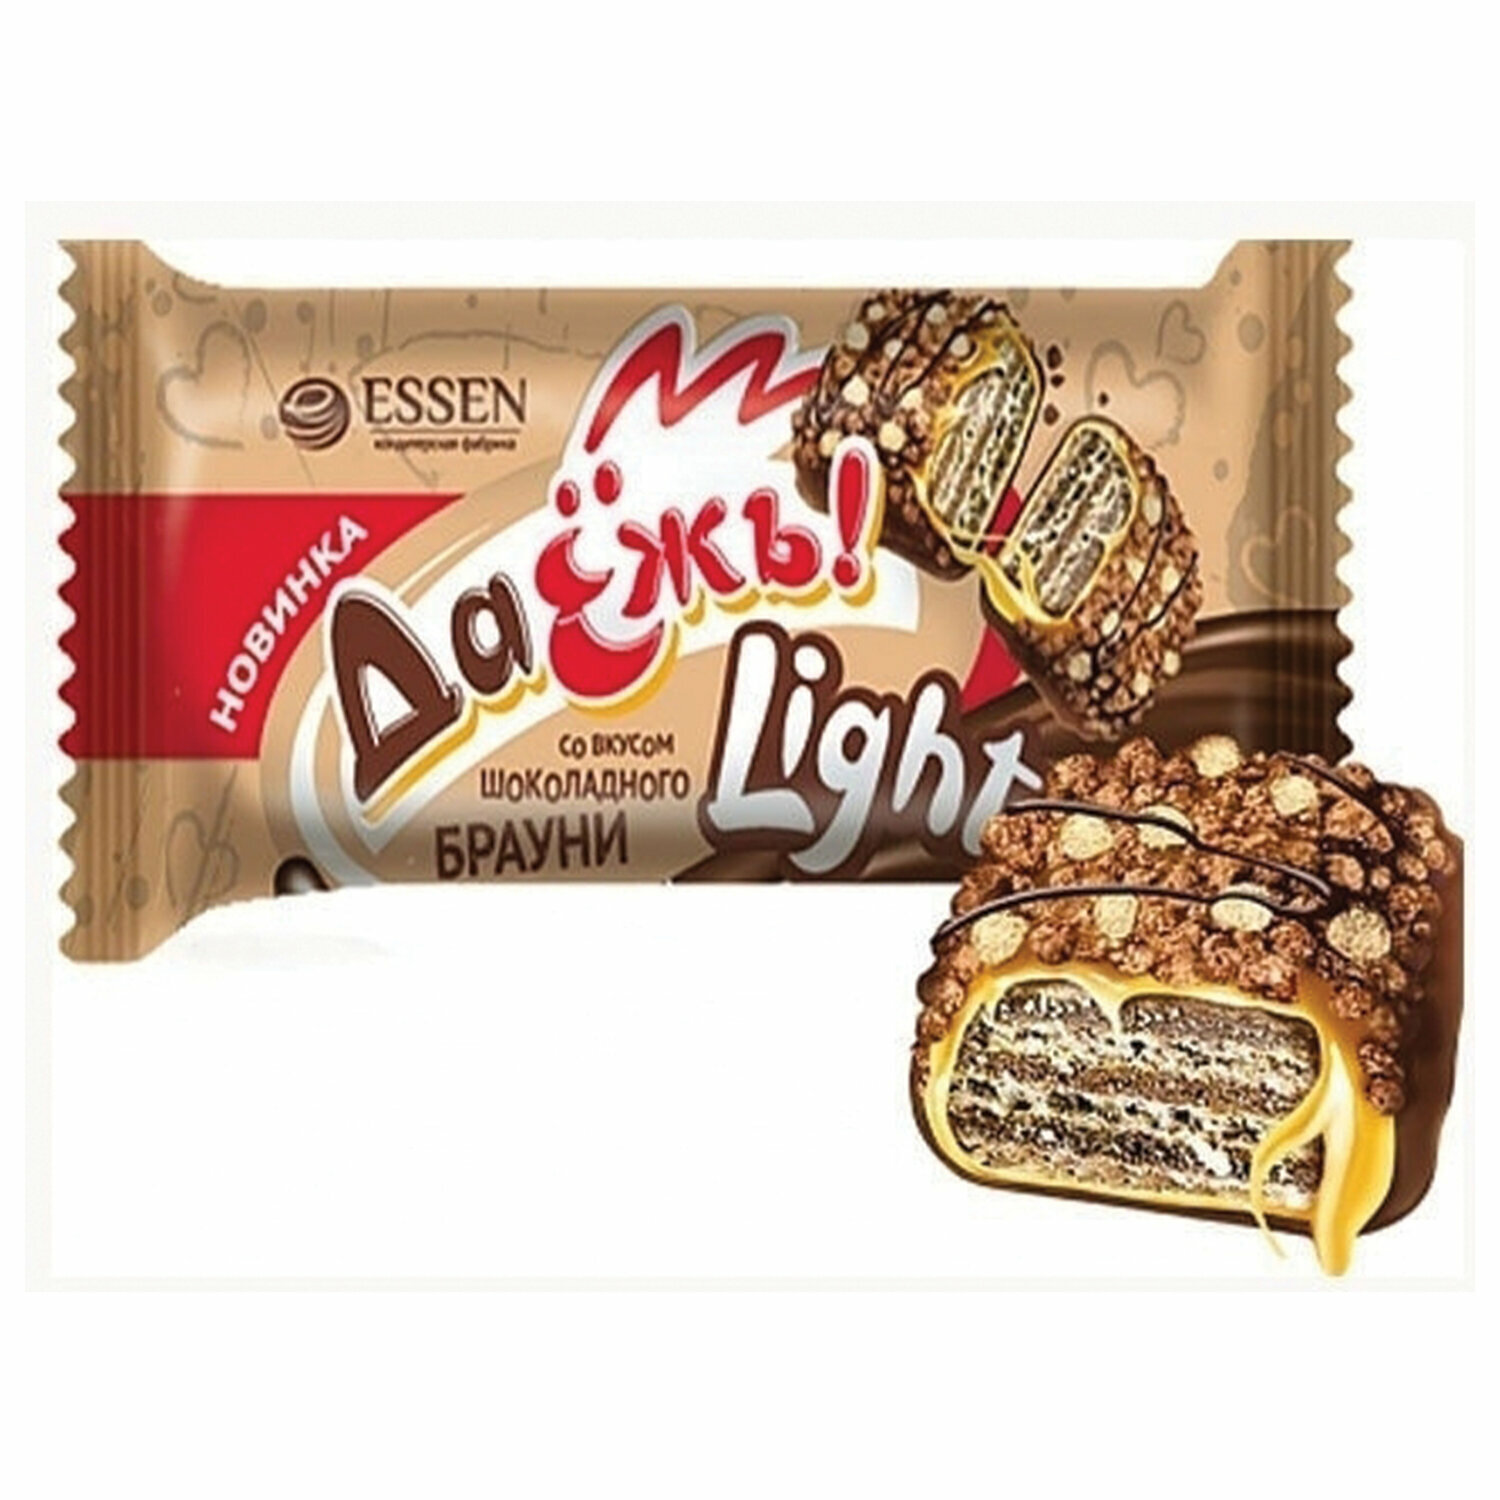 Конфеты шоколадные ESSEN ДаЁжъ! Light со вкусом шоколадного брауни, 500 г, пакет - фотография № 1